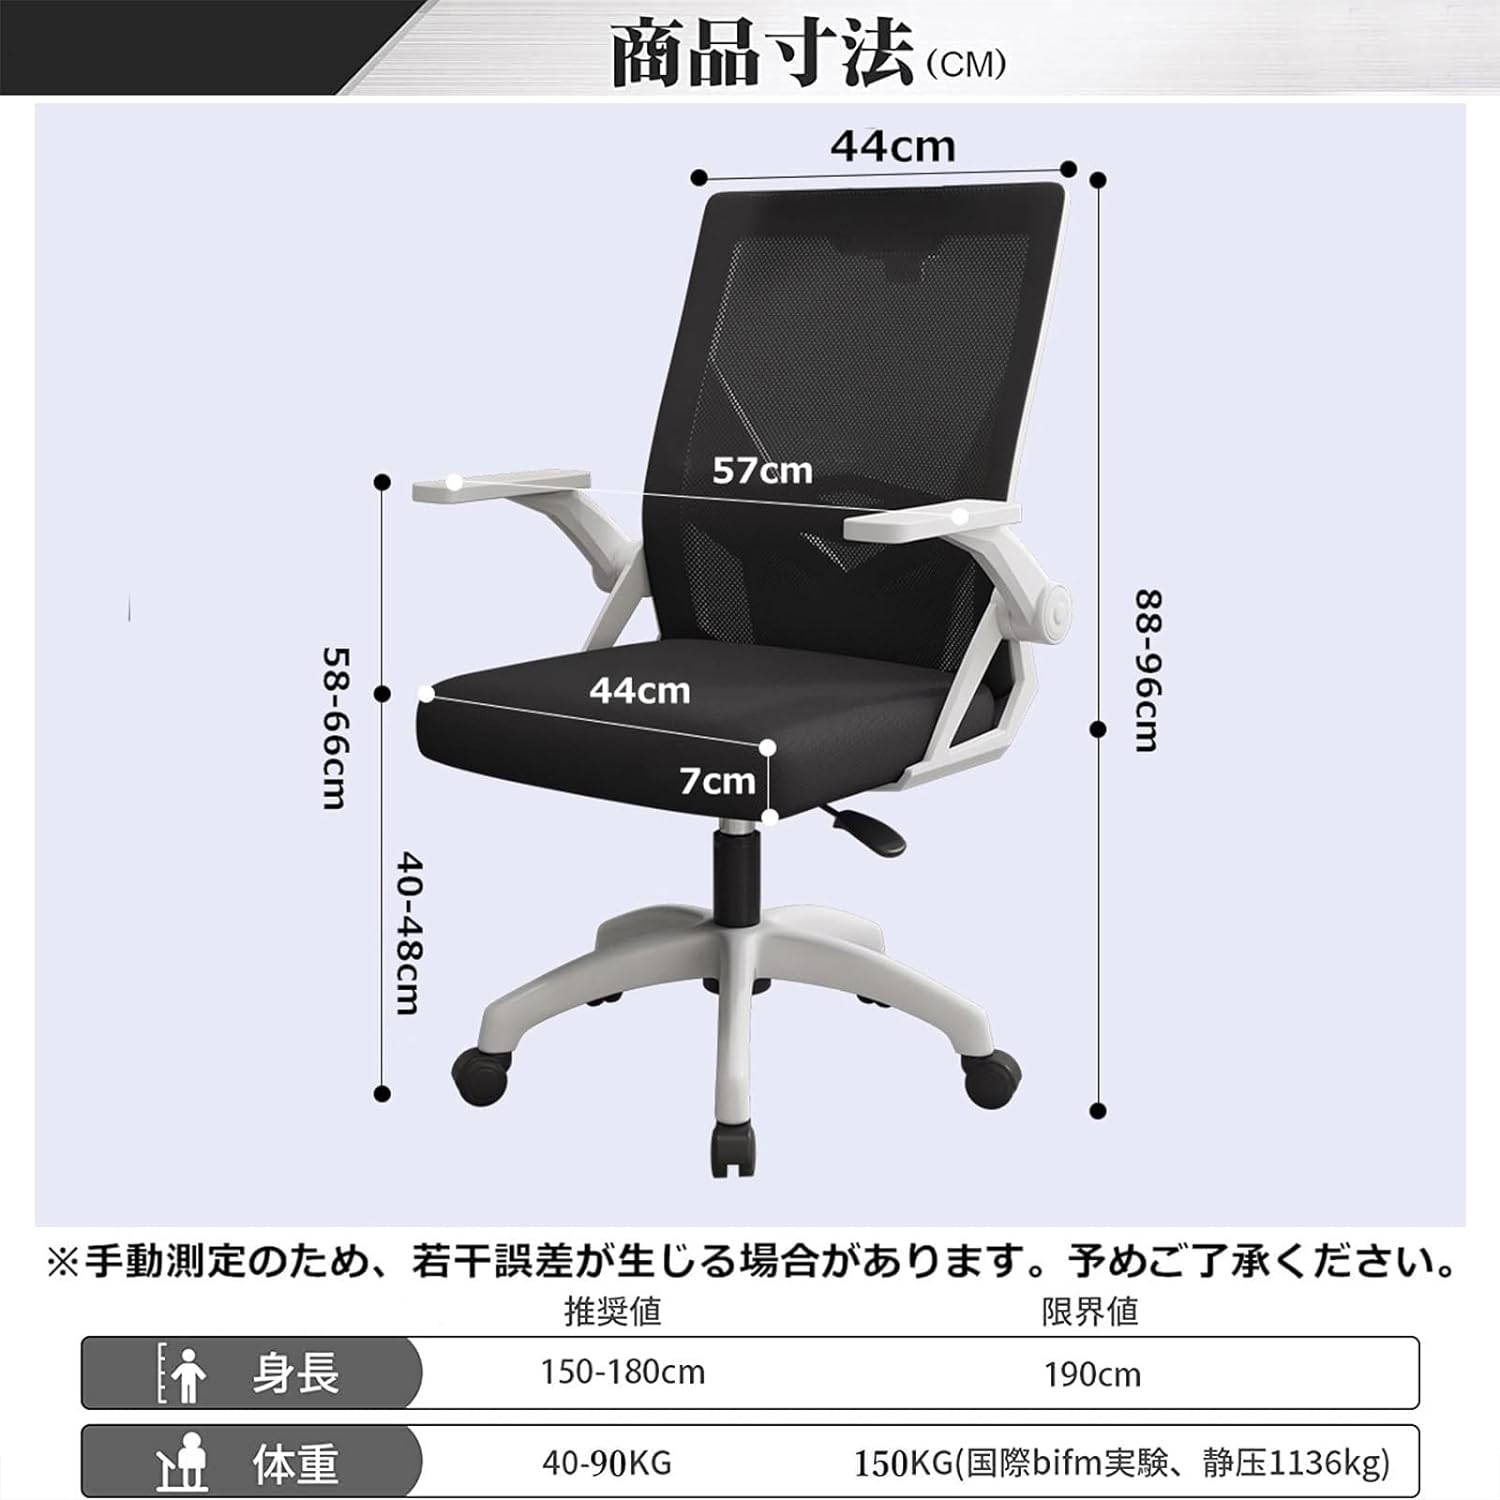 オフィスチェア 椅子 テレワーク 疲れない デスクチェア 人間工学椅子 跳ね上げ式アームレスト 通気性メッシュ ロッキング機能 在宅勤務H-WY13